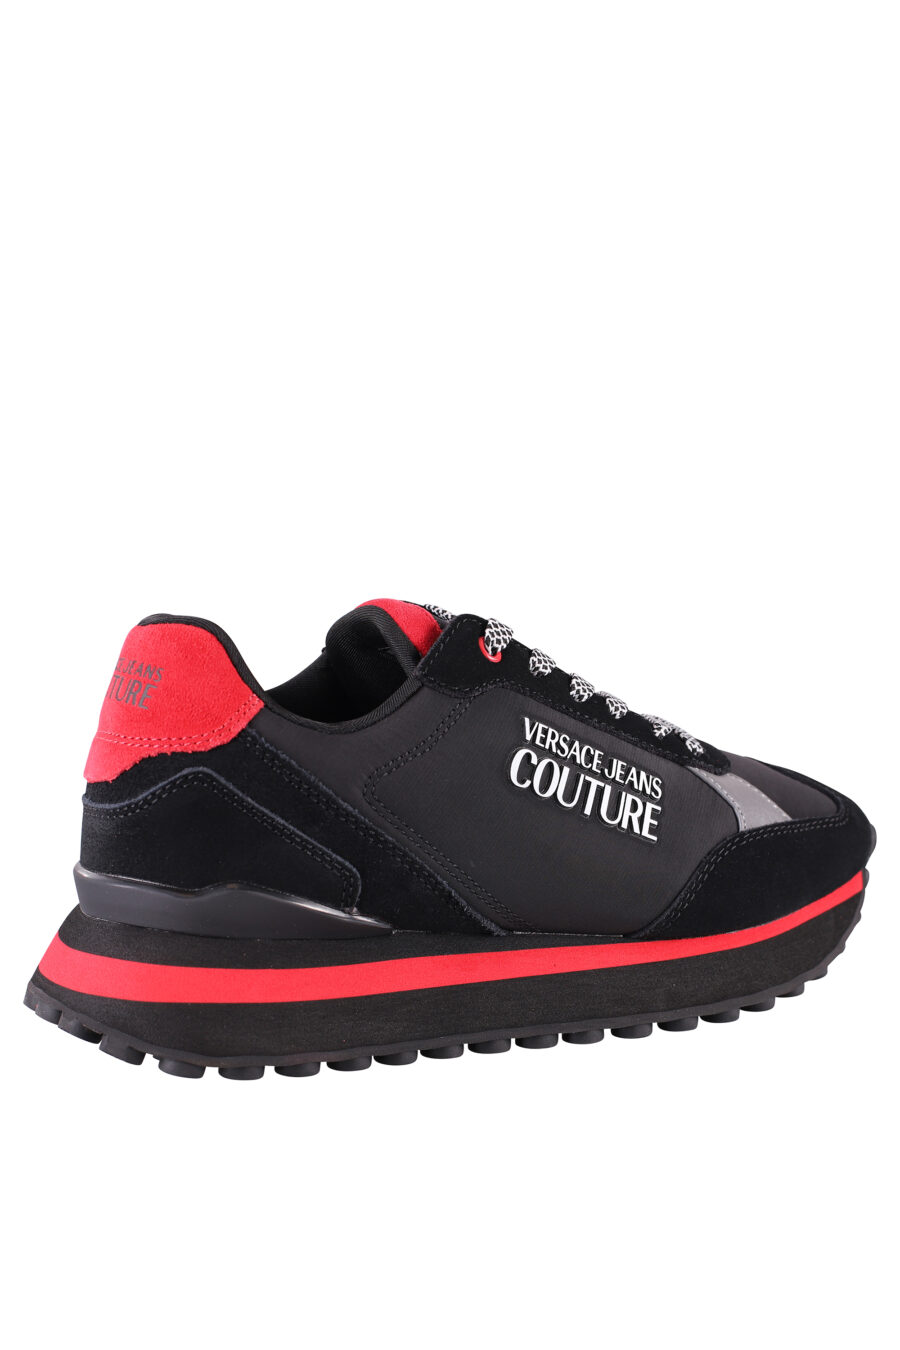 Zapatillas negras y rojas con plataforma y logo plateado - IMG 8494